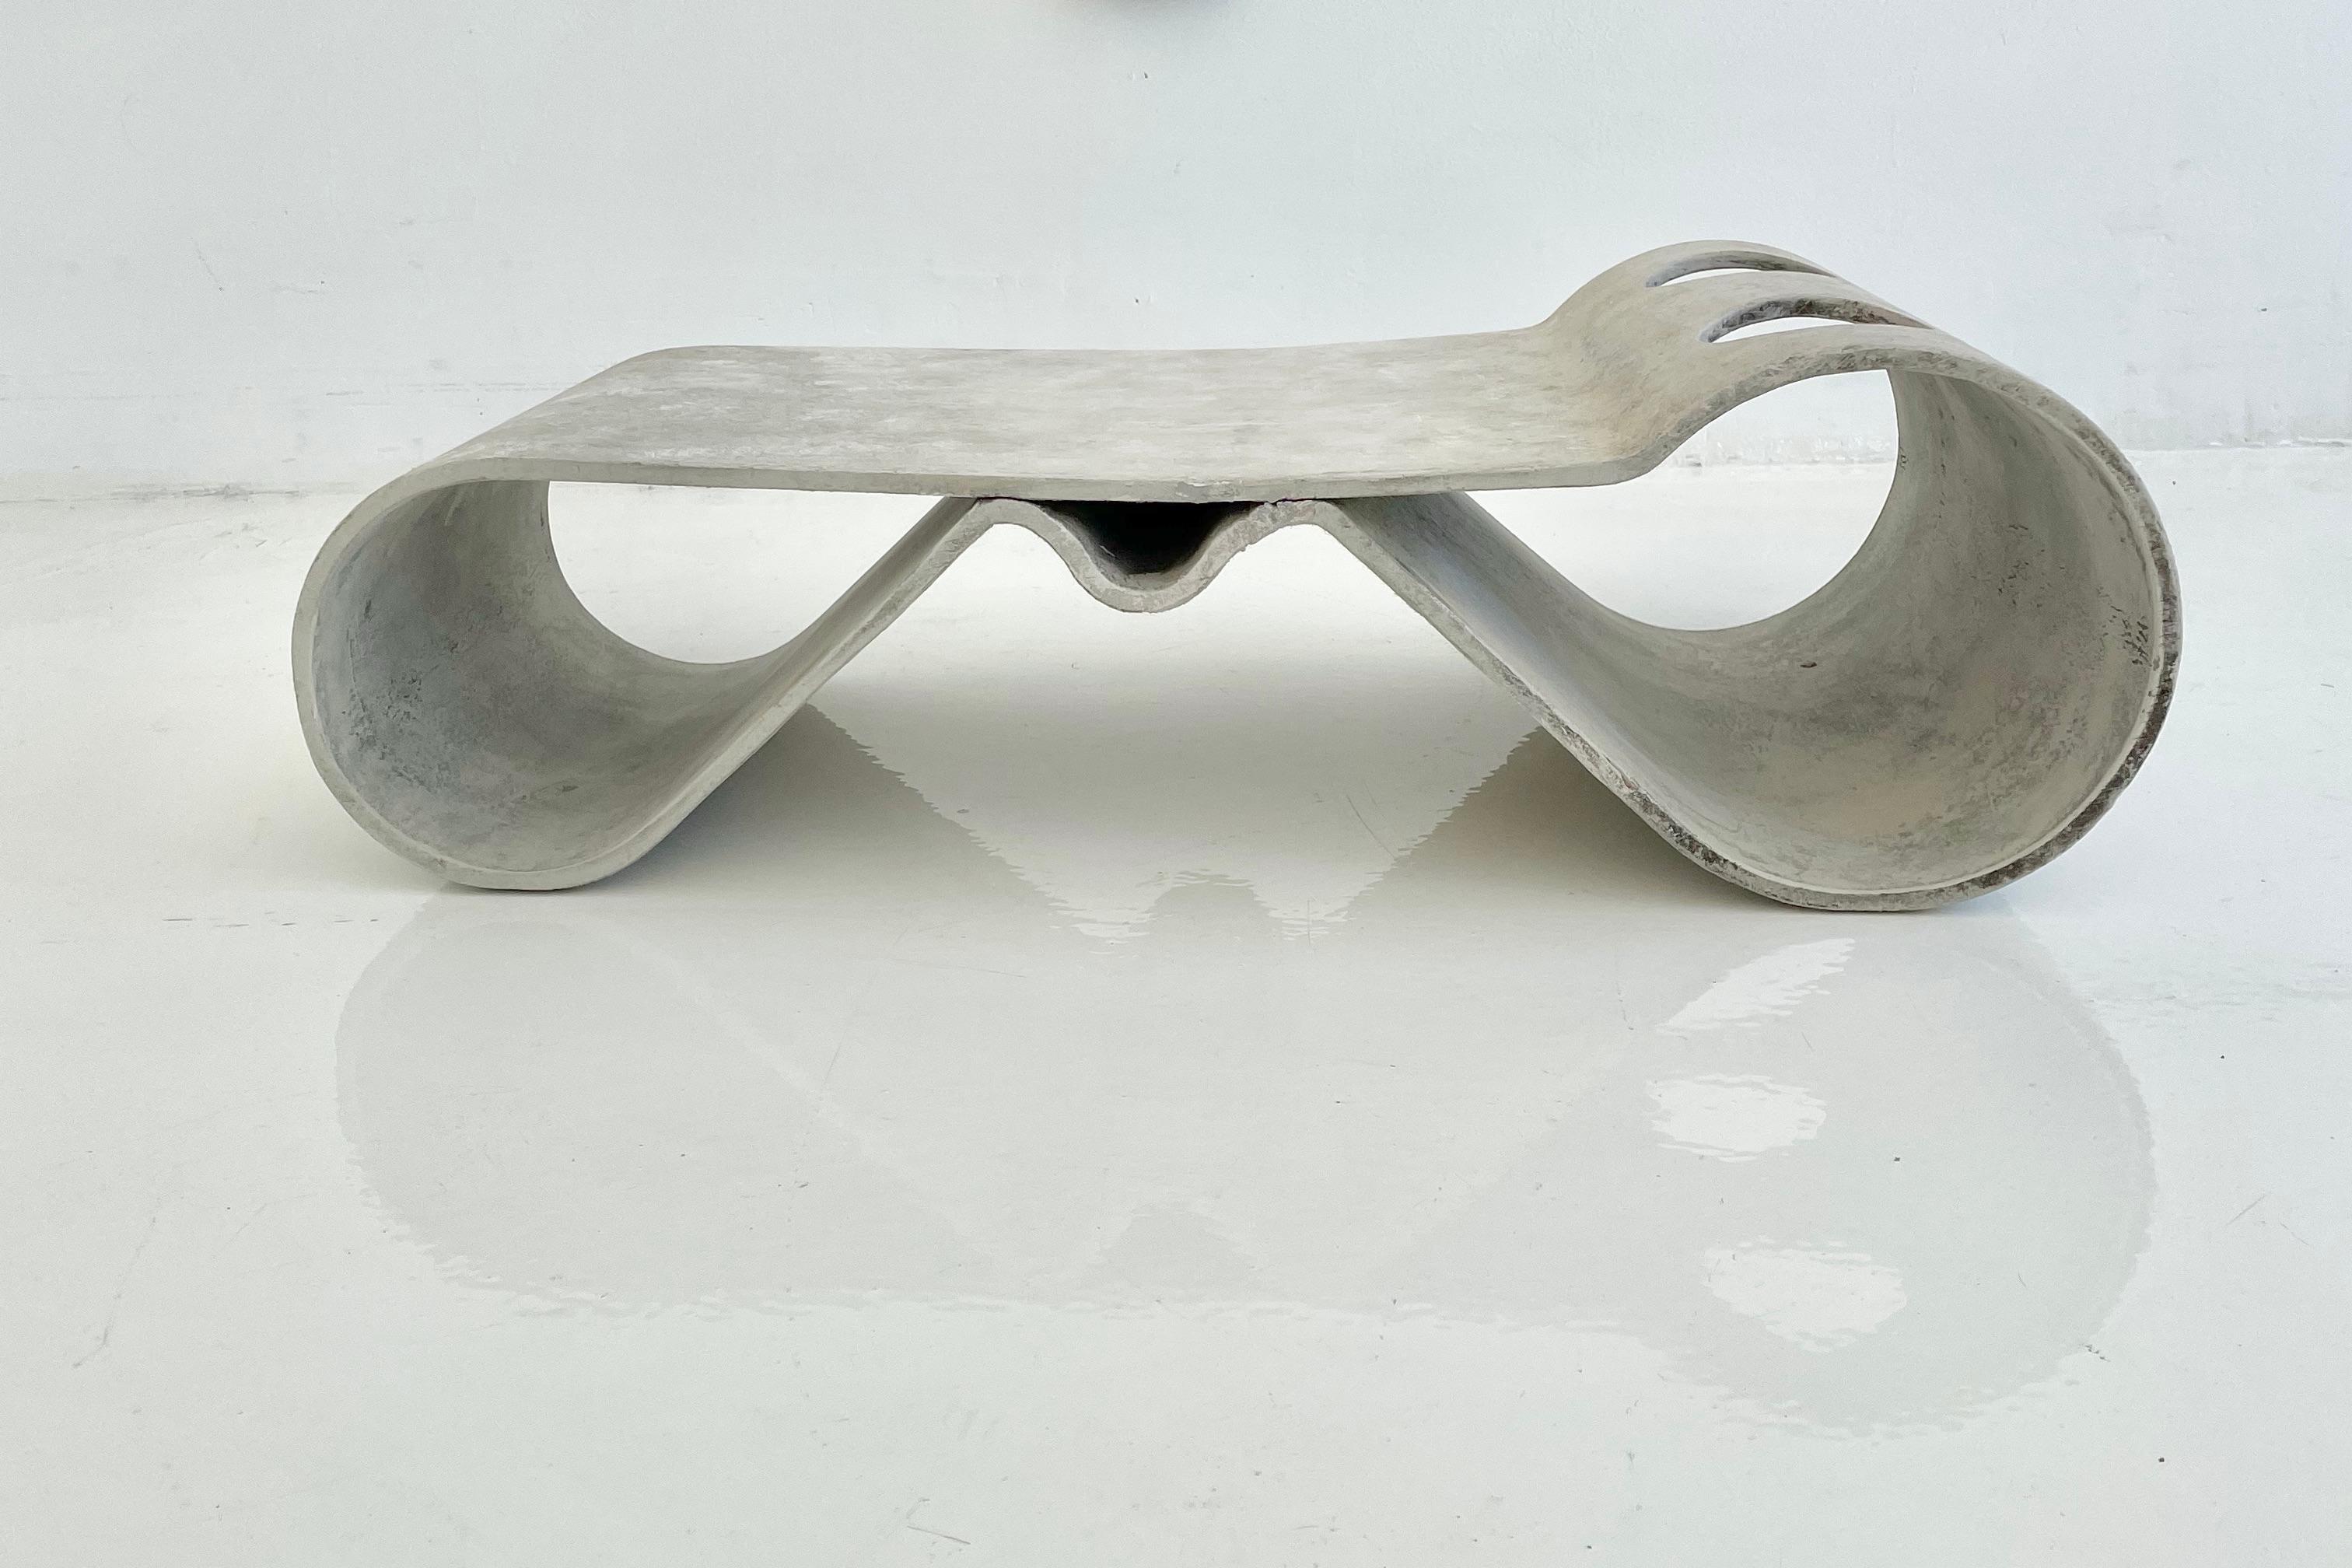 La table Loop de Willy Guhl est une icône du design de mobilier moderniste suisse. La table Loop (également connue sous le nom de table de plage) a été conçue par le designer industriel suisse Willy Guhl en 1954. Une pièce extrêmement polyvalente